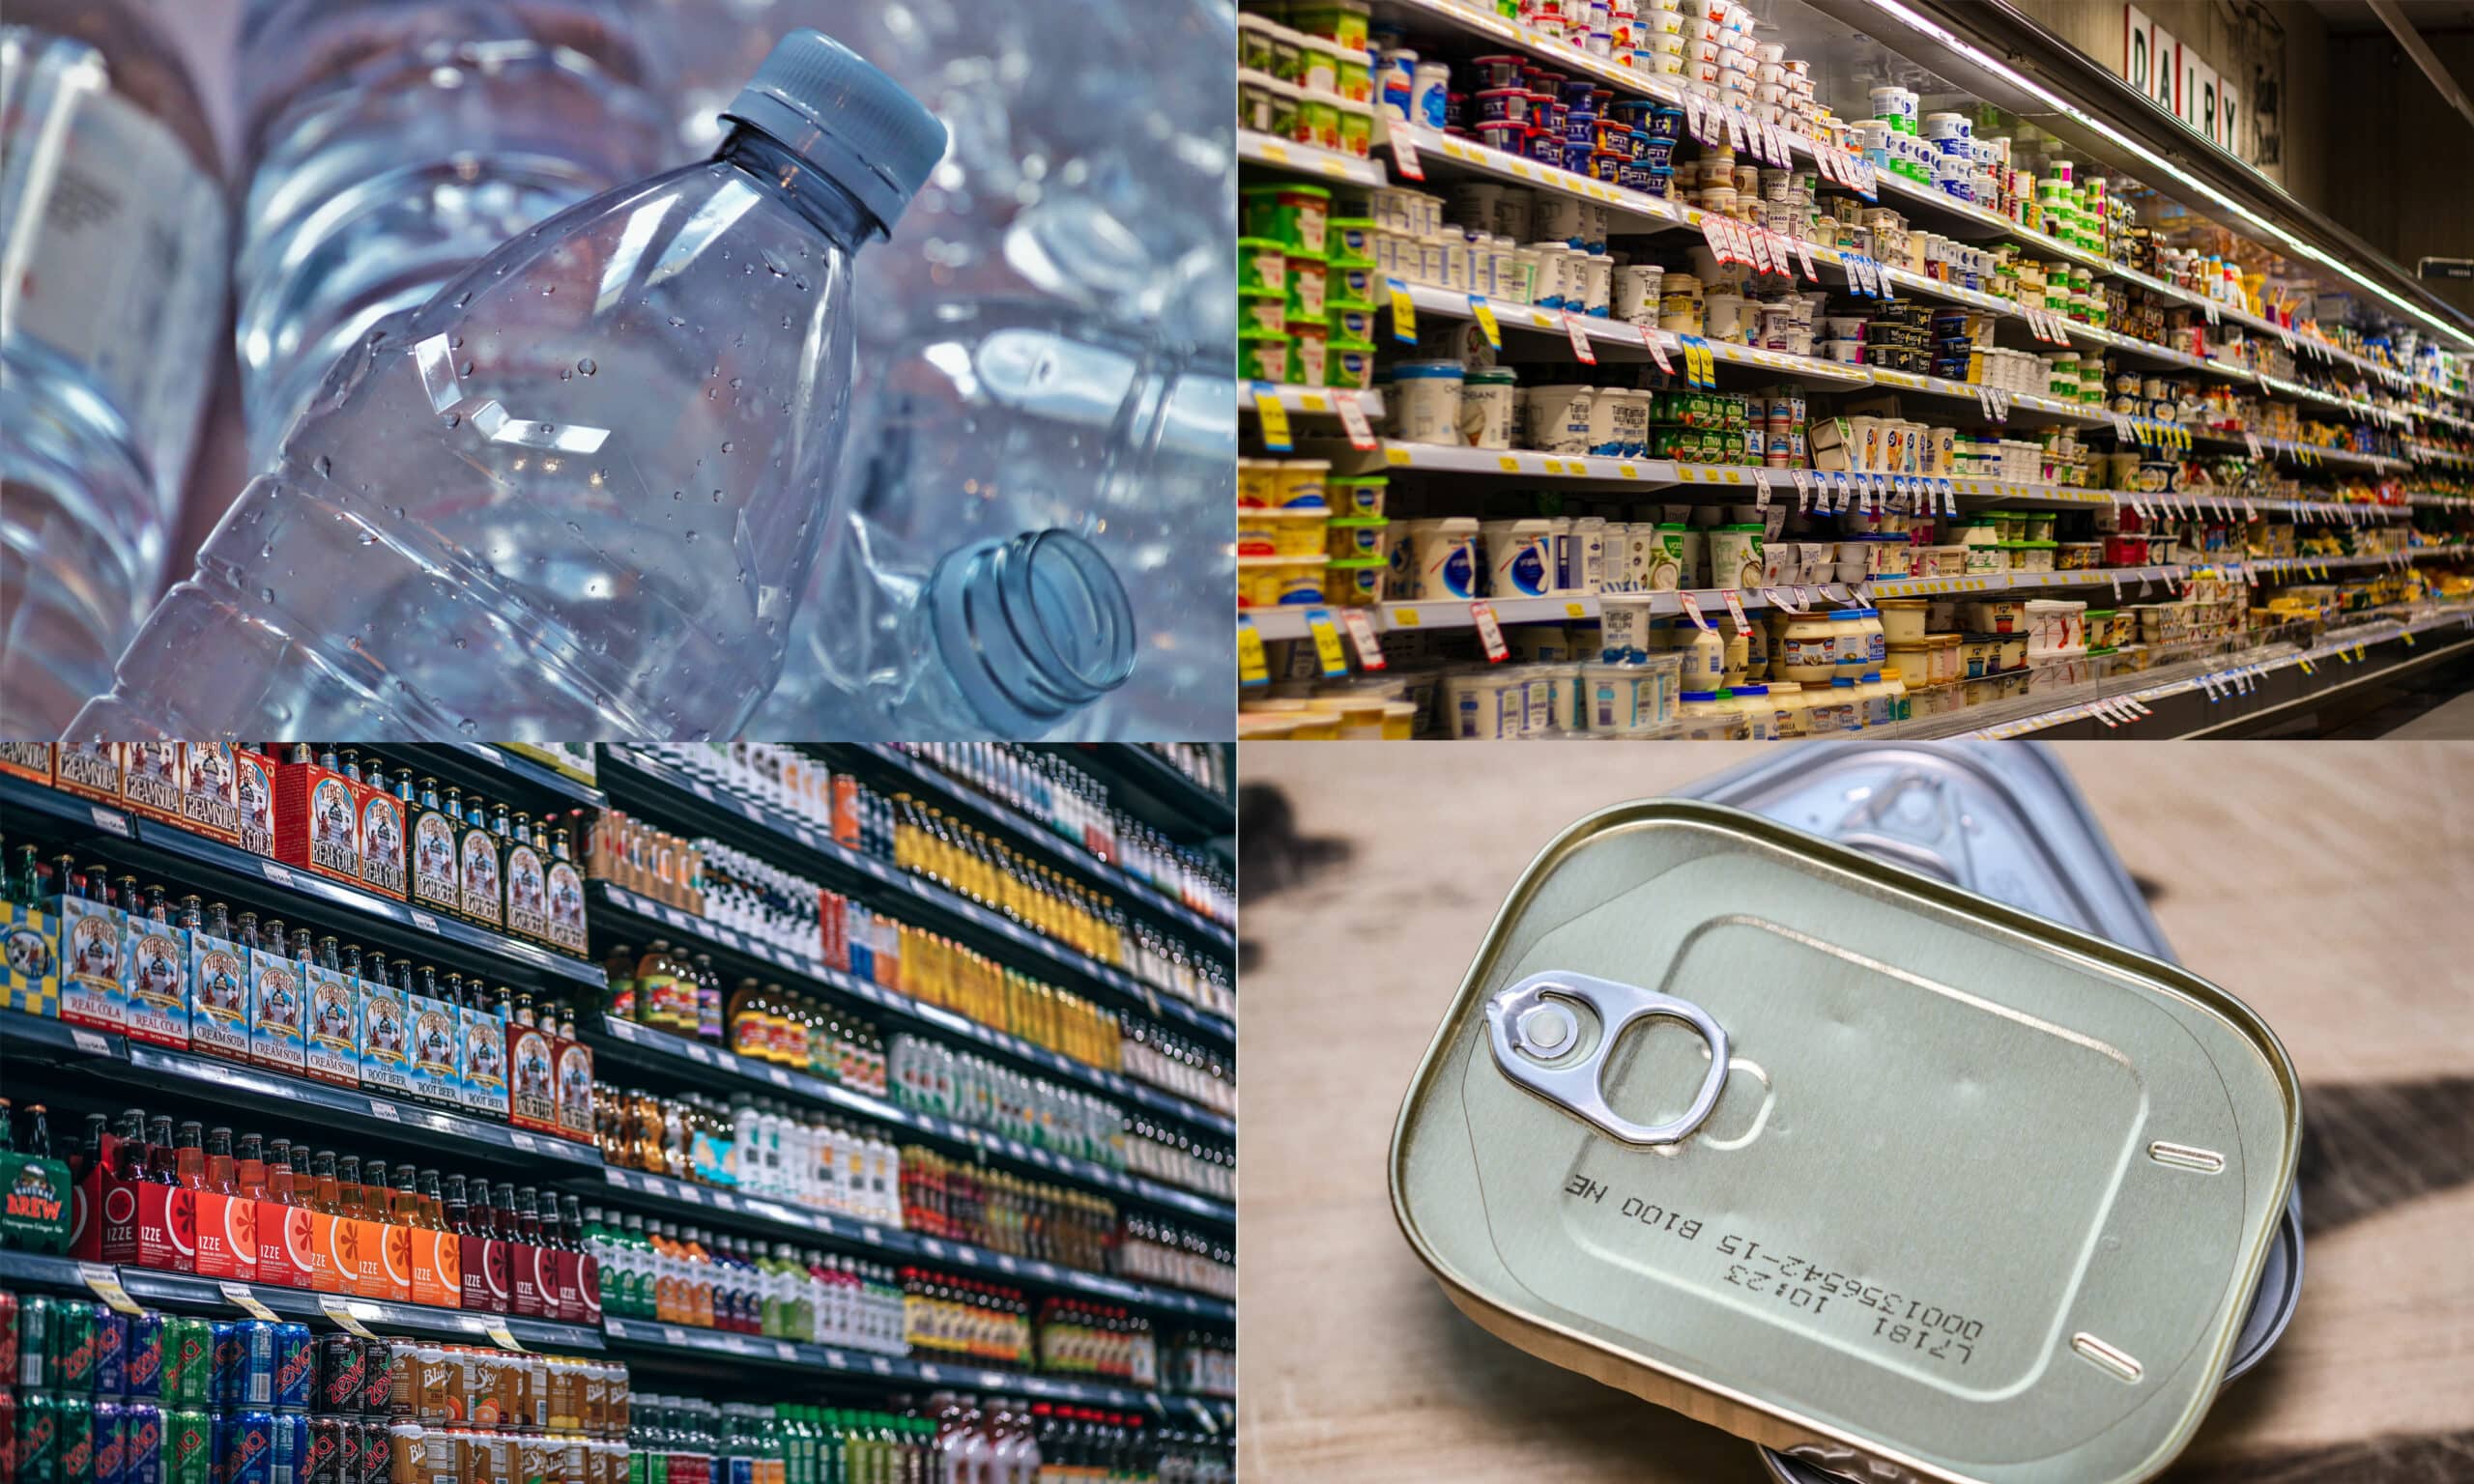 Matemballasje-collage: drikkeflasker og matvarer i butikkhyller, hermetikkbokser og drikekflasker